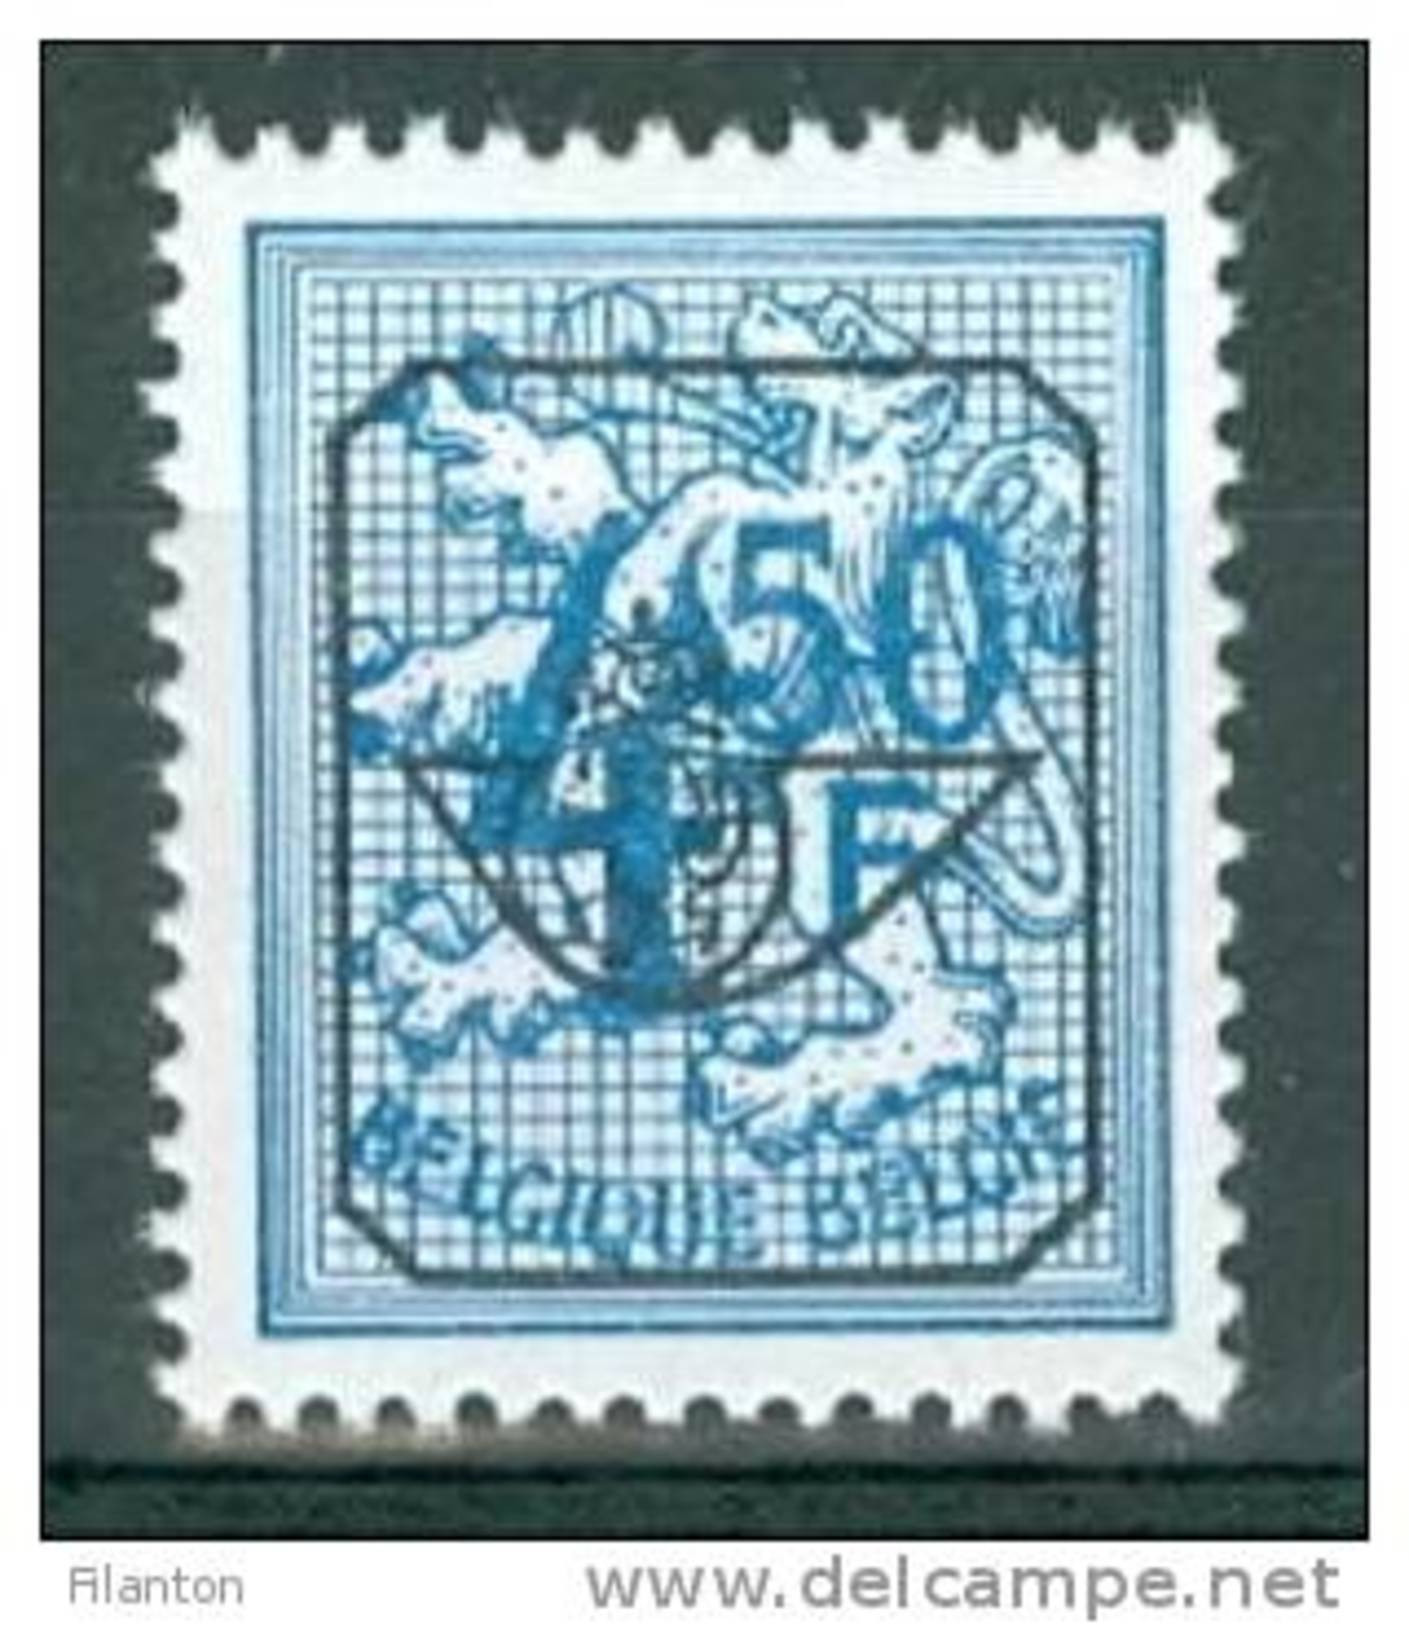 BELGIE - OBP Nr V 797 - Typo Cijfer Op Leeuw - Préoblitéré/Voorafgestempeld/Precancels -  - MNH** - Wit Papier Blanc - Typos 1951-80 (Chiffre Sur Lion)